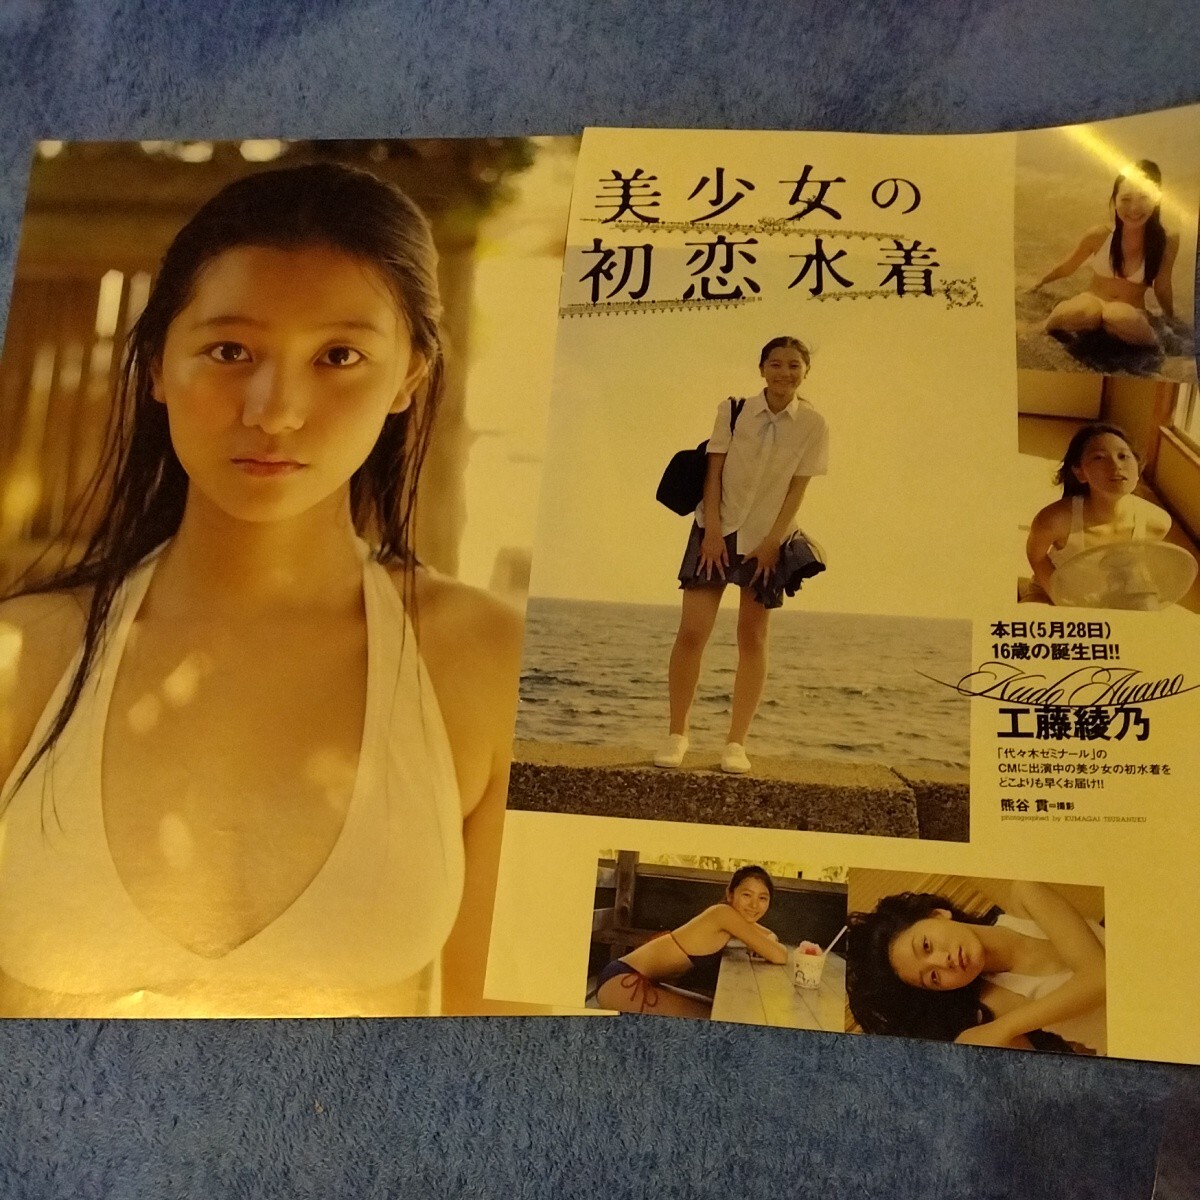 工藤綾乃 16歳 2012年 初恋水着 切抜き 3ページ B-5zの画像1